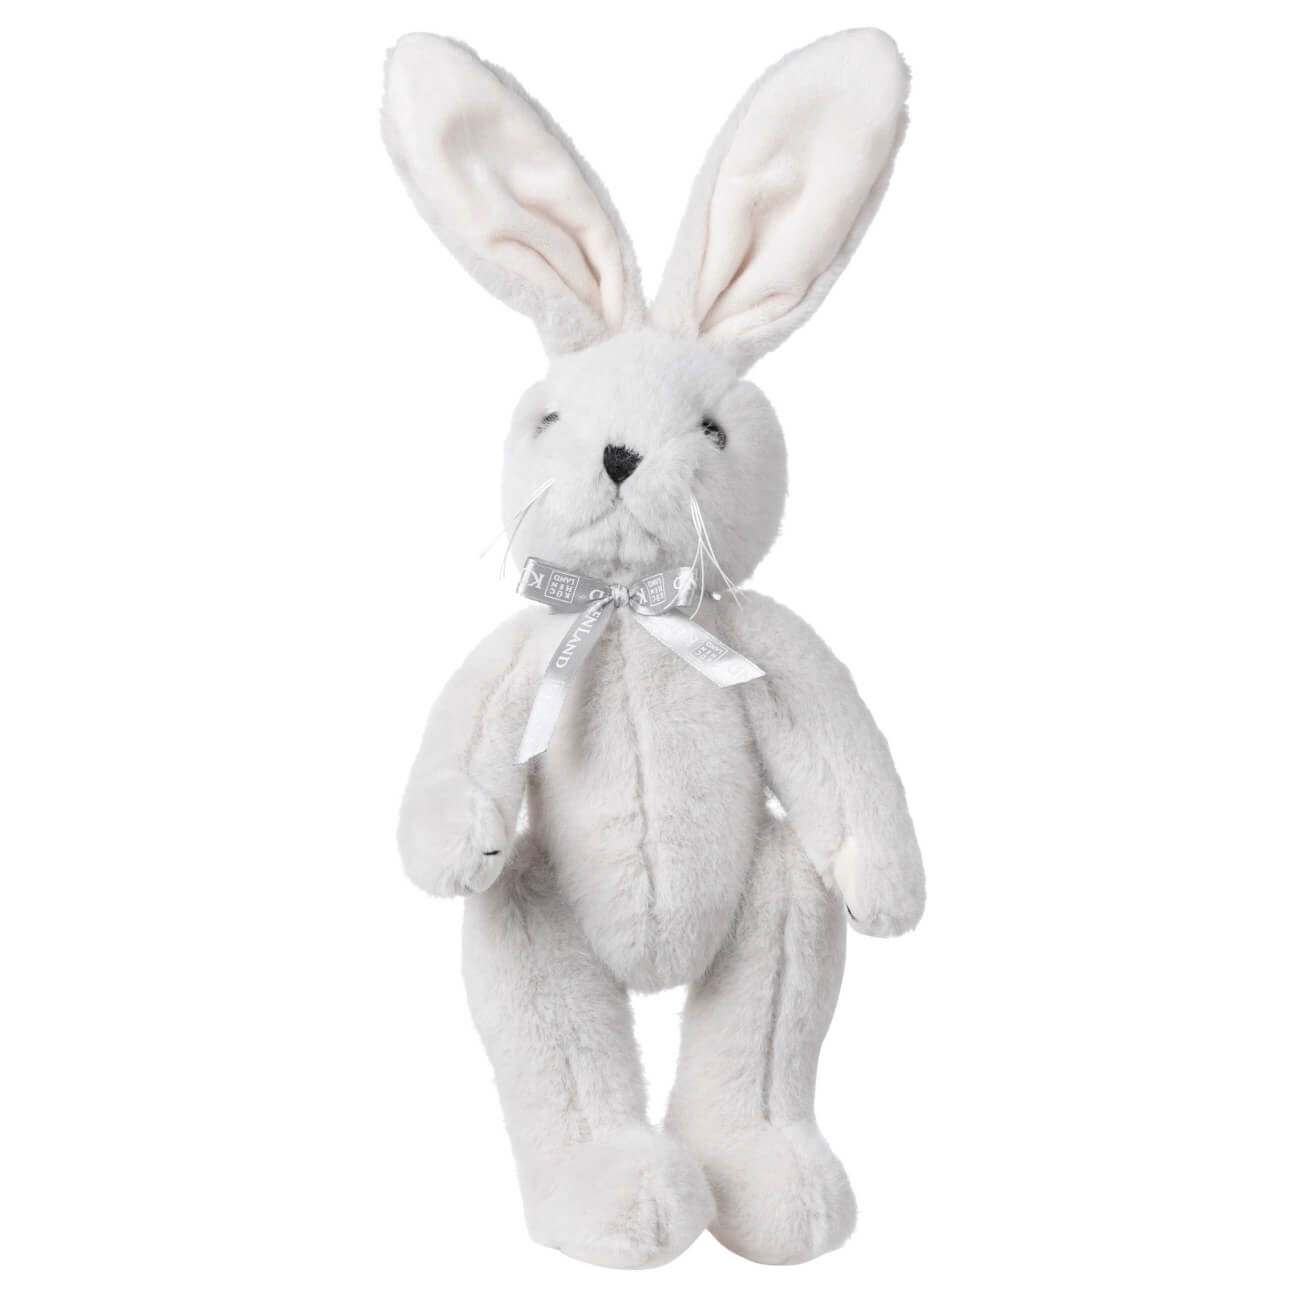 Игрушка, 30 см, мягкая, с подвижными лапами, полиэстер, светло-серая, Кролик, Rabbit toy мягкая игрушка зайка снежок с длинными ушами в шарфе 20 см